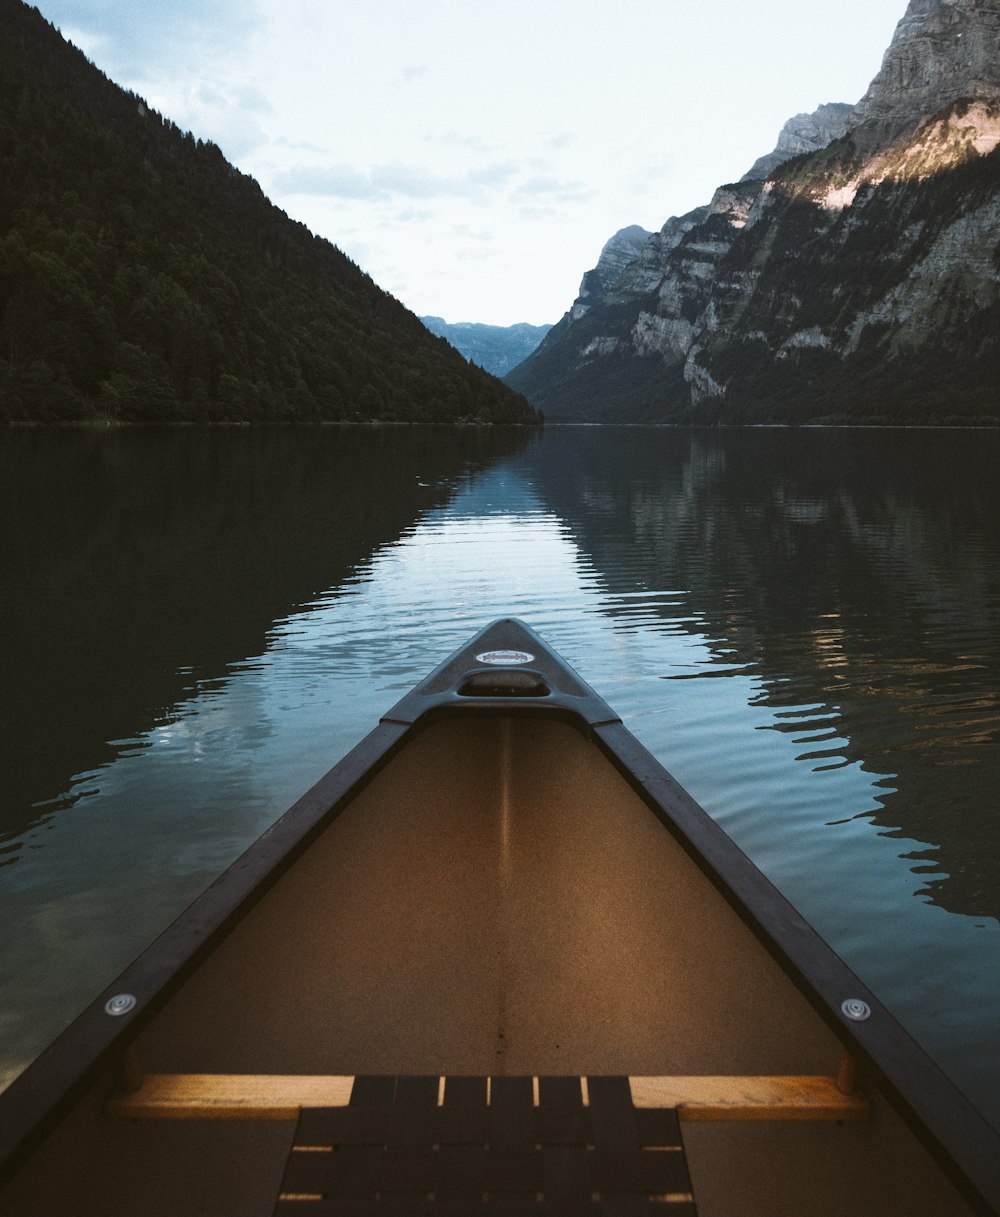 Kanu auf Gewässer mit Berghintergrund